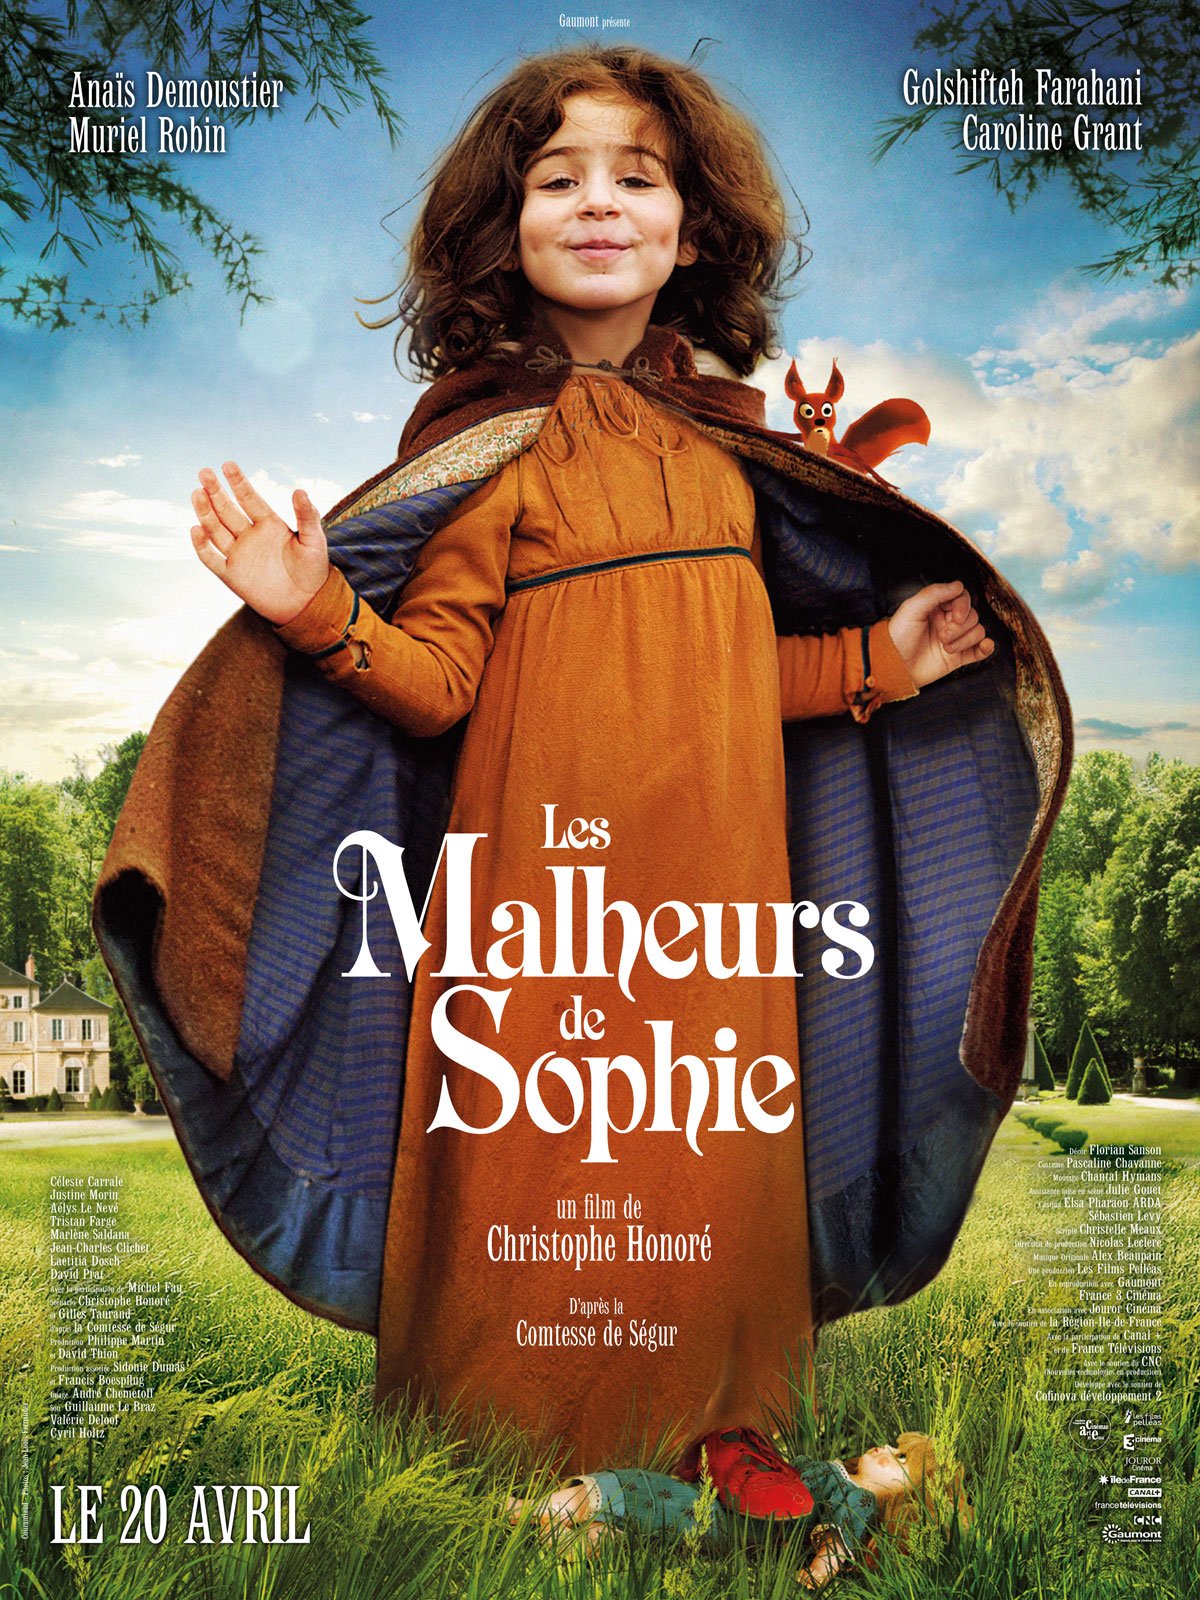 [好雷] 搗蛋鬼蘇菲 Les Malheurs de Sophie (2016 法國片) 